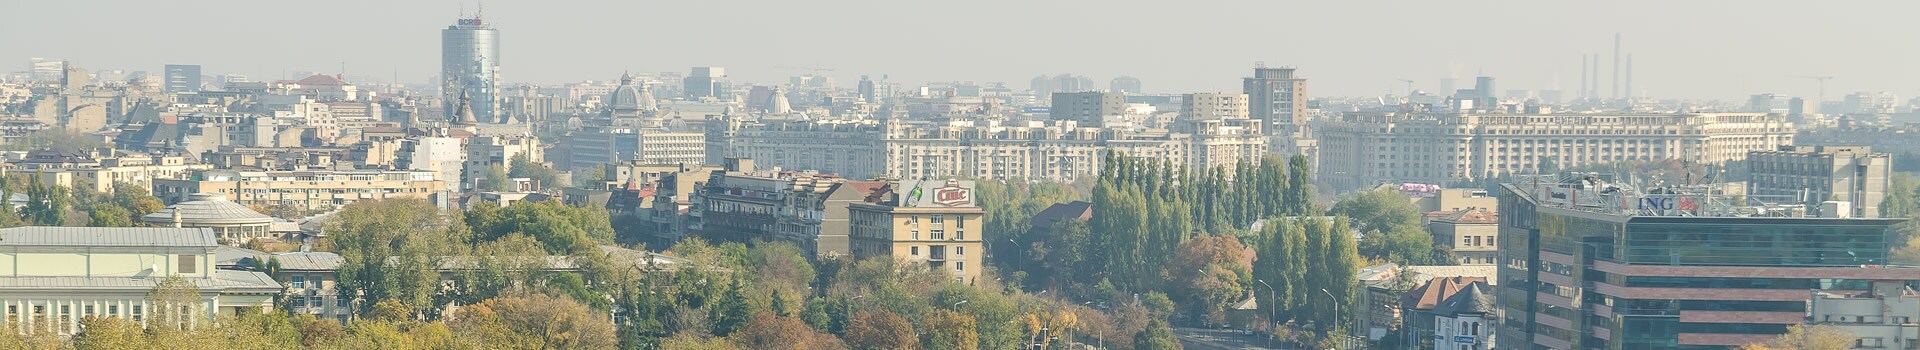 Rooma - Bucarest